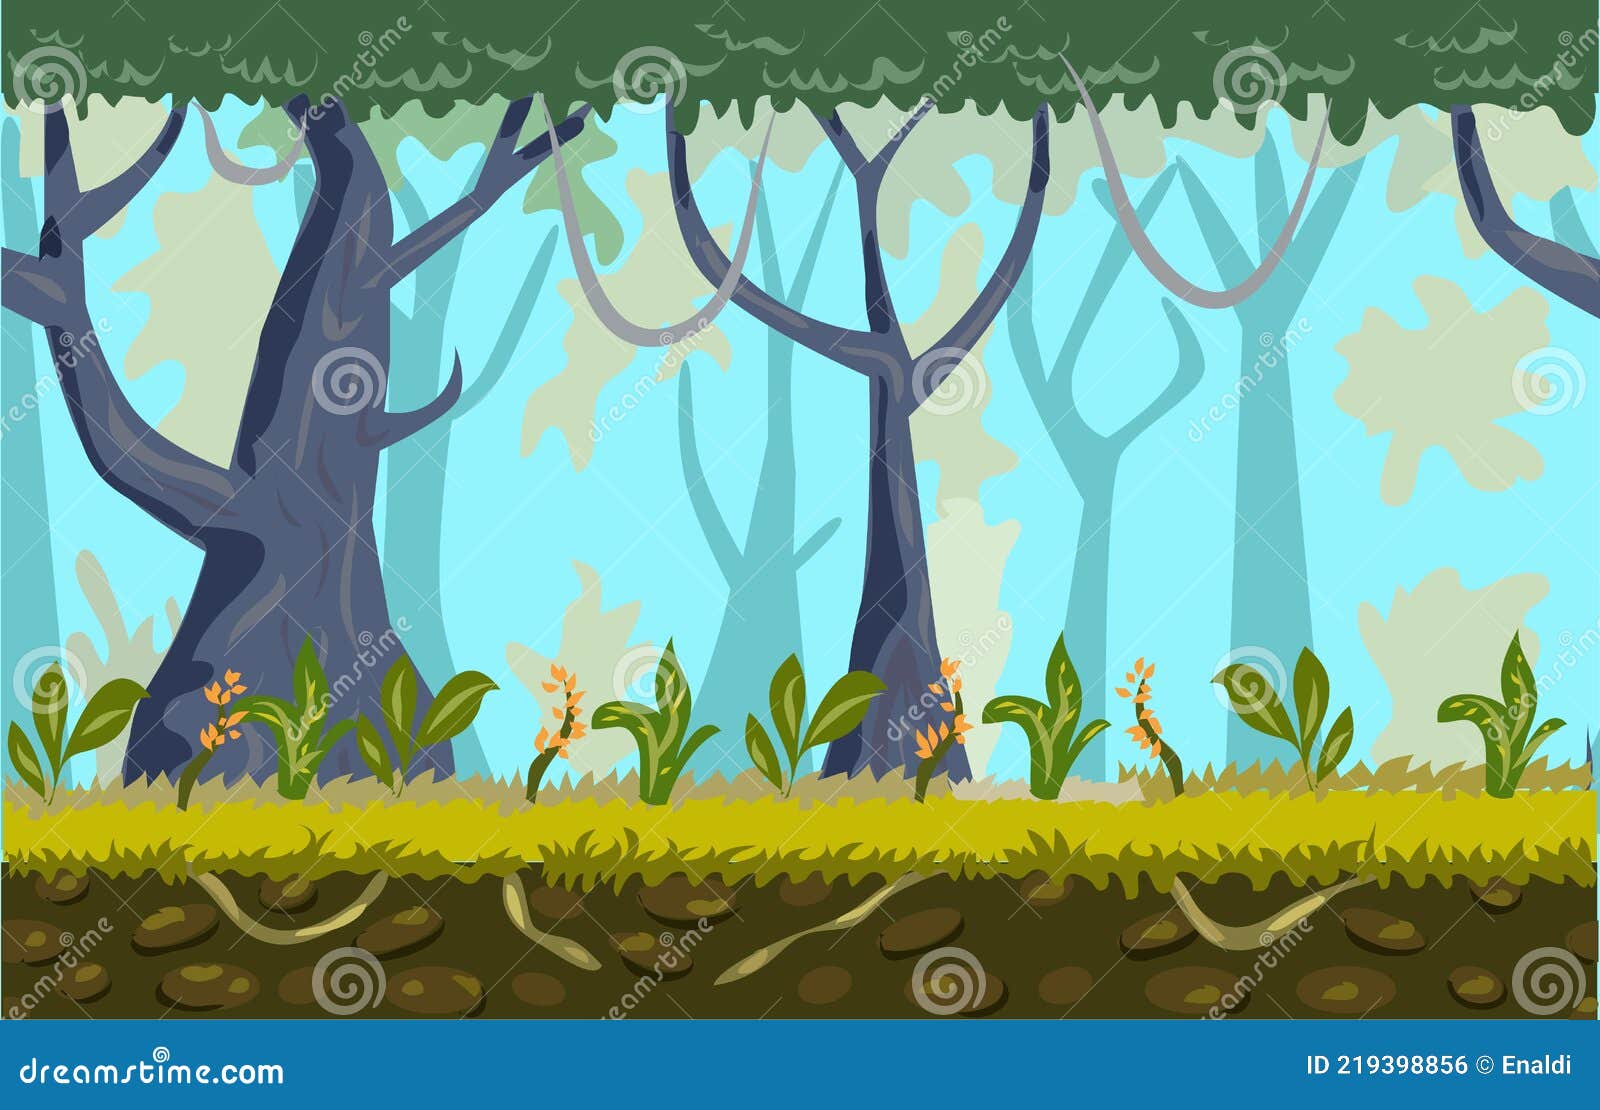 Forest Game Background (Hình nền trò chơi rừng): Hãy khám phá hình nền trò chơi rừng đẹp như tranh để bắt đầu cuộc phiêu lưu của riêng bạn. Với thiết kế môi trường rừng đầy màu sắc, bạn sẽ cảm thấy rằng mình đang thực sự đắm mình trong thế giới rừng nguyên sinh. Khám phá và tận hưởng những phút giây thư giãn.